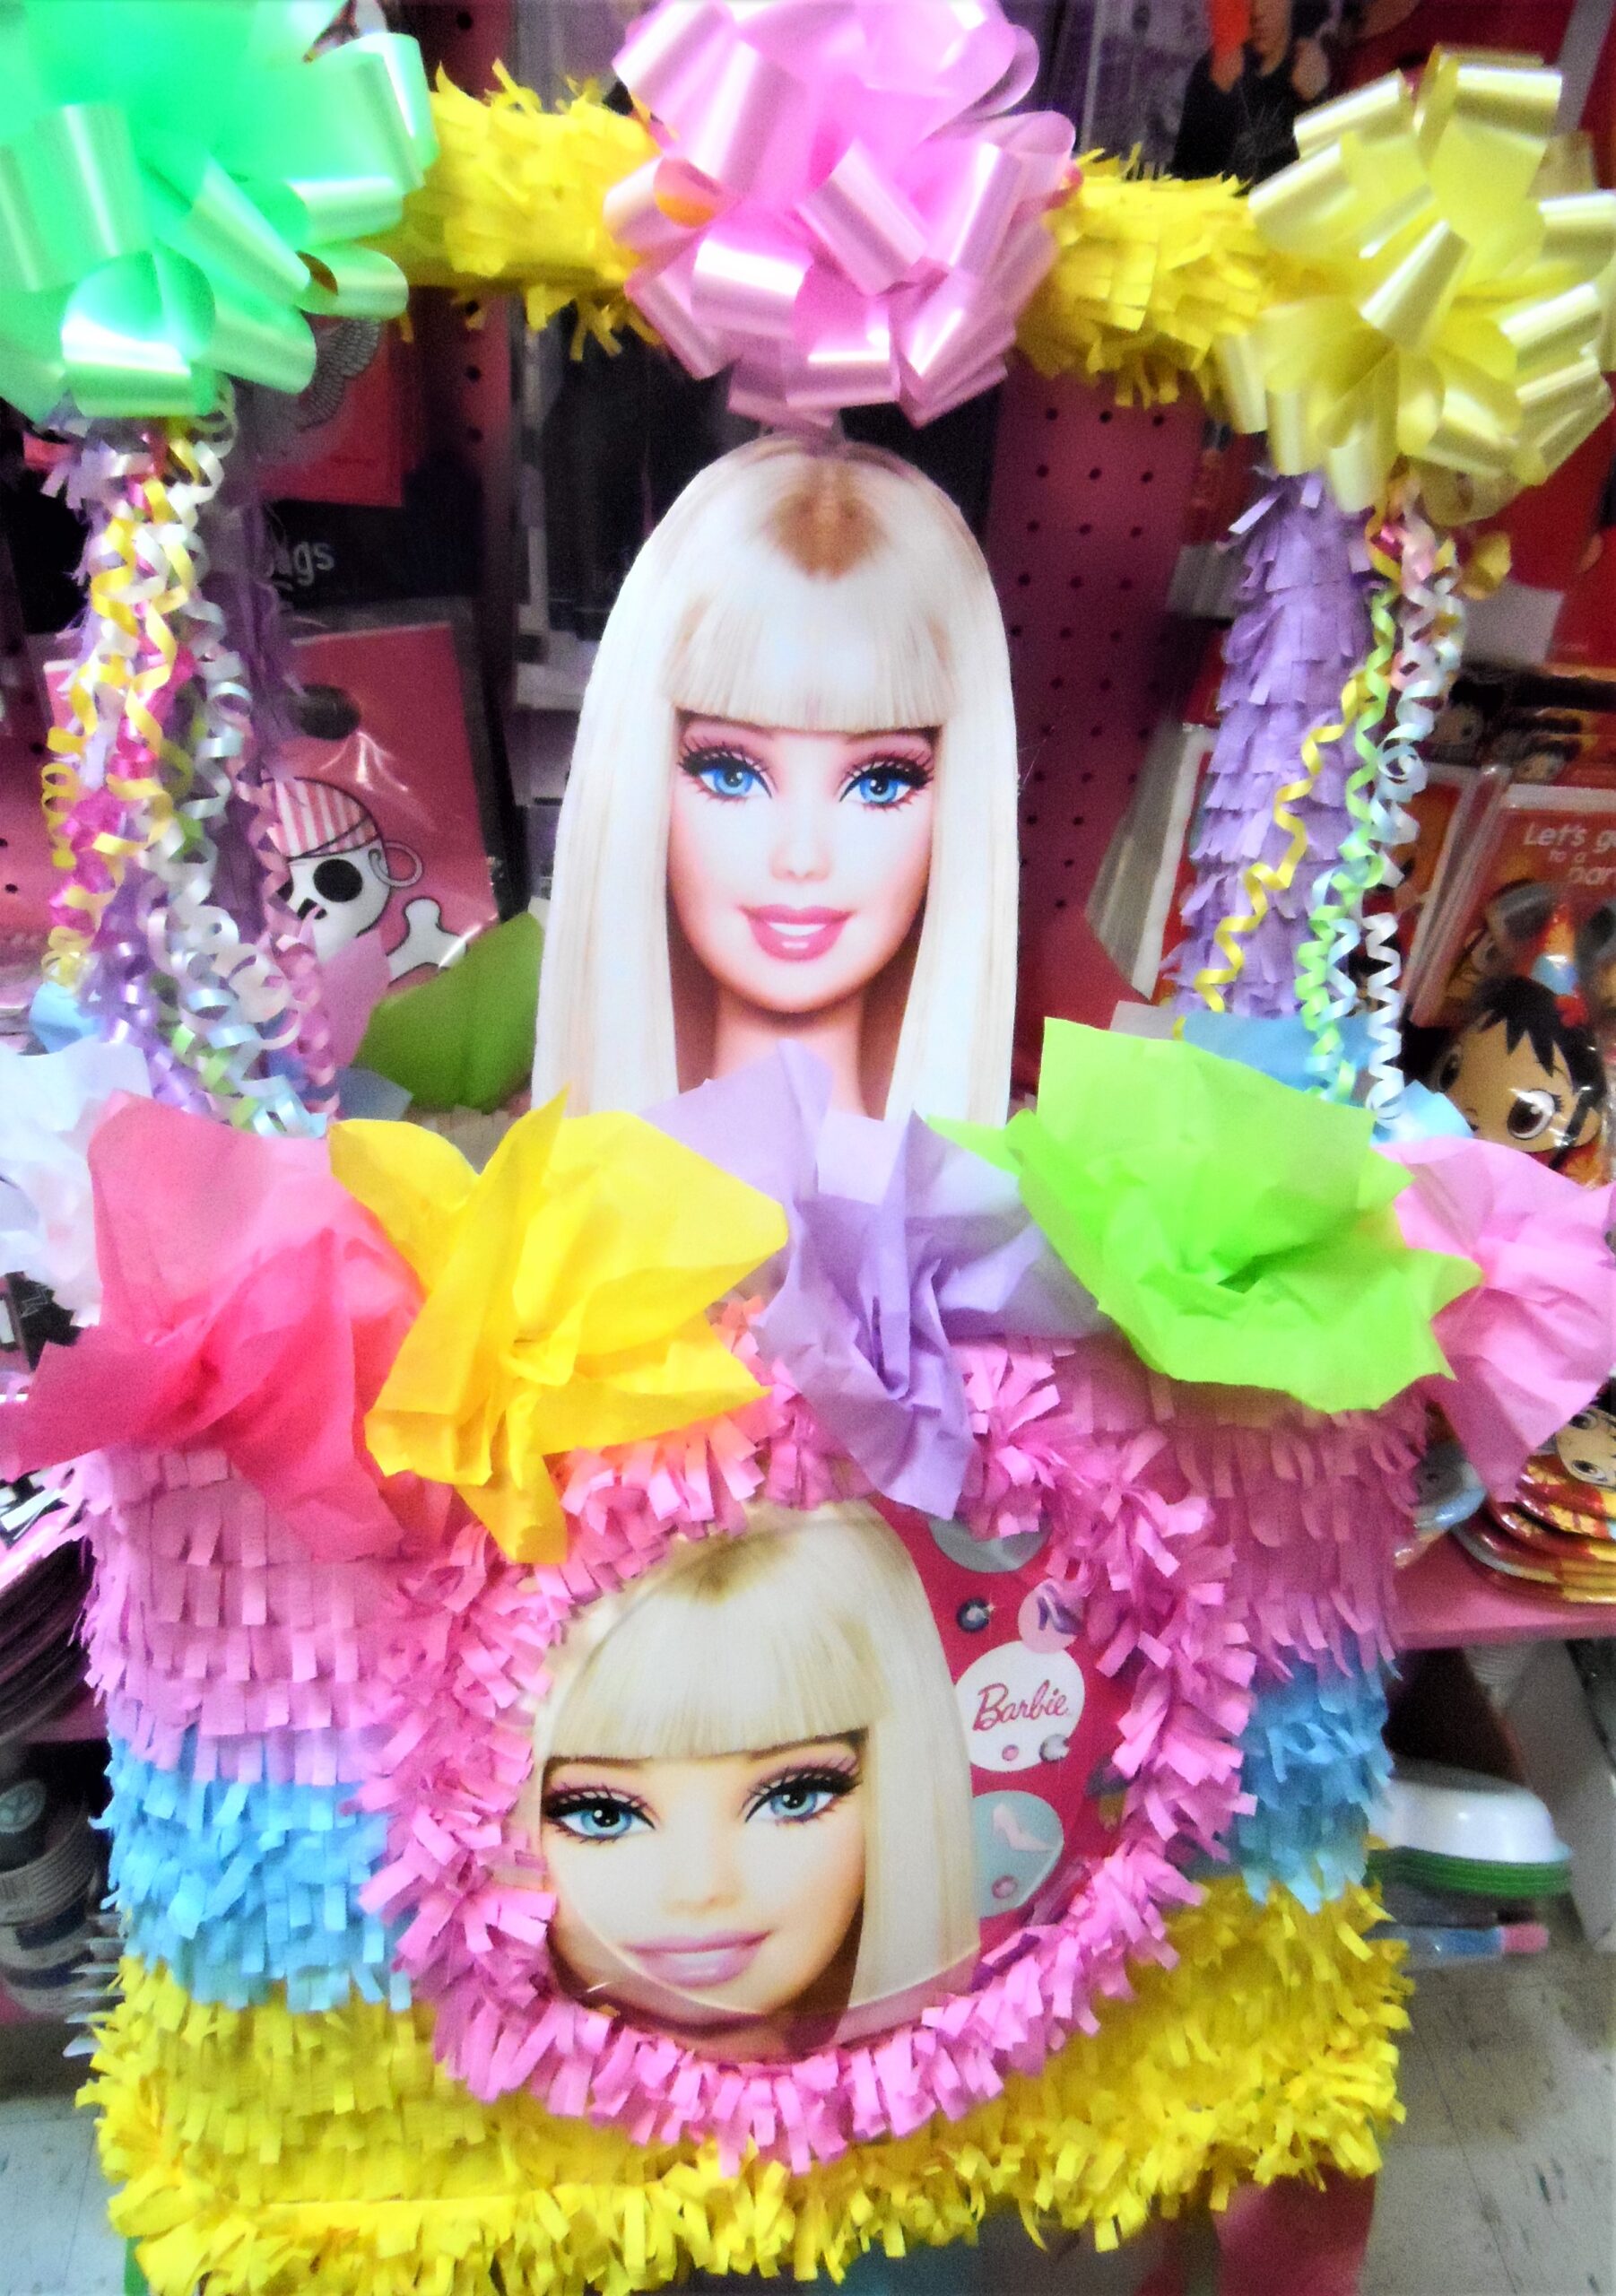 Globos Barbie x12 - Decoraciones para Piñatas - Tienda de Piñatas